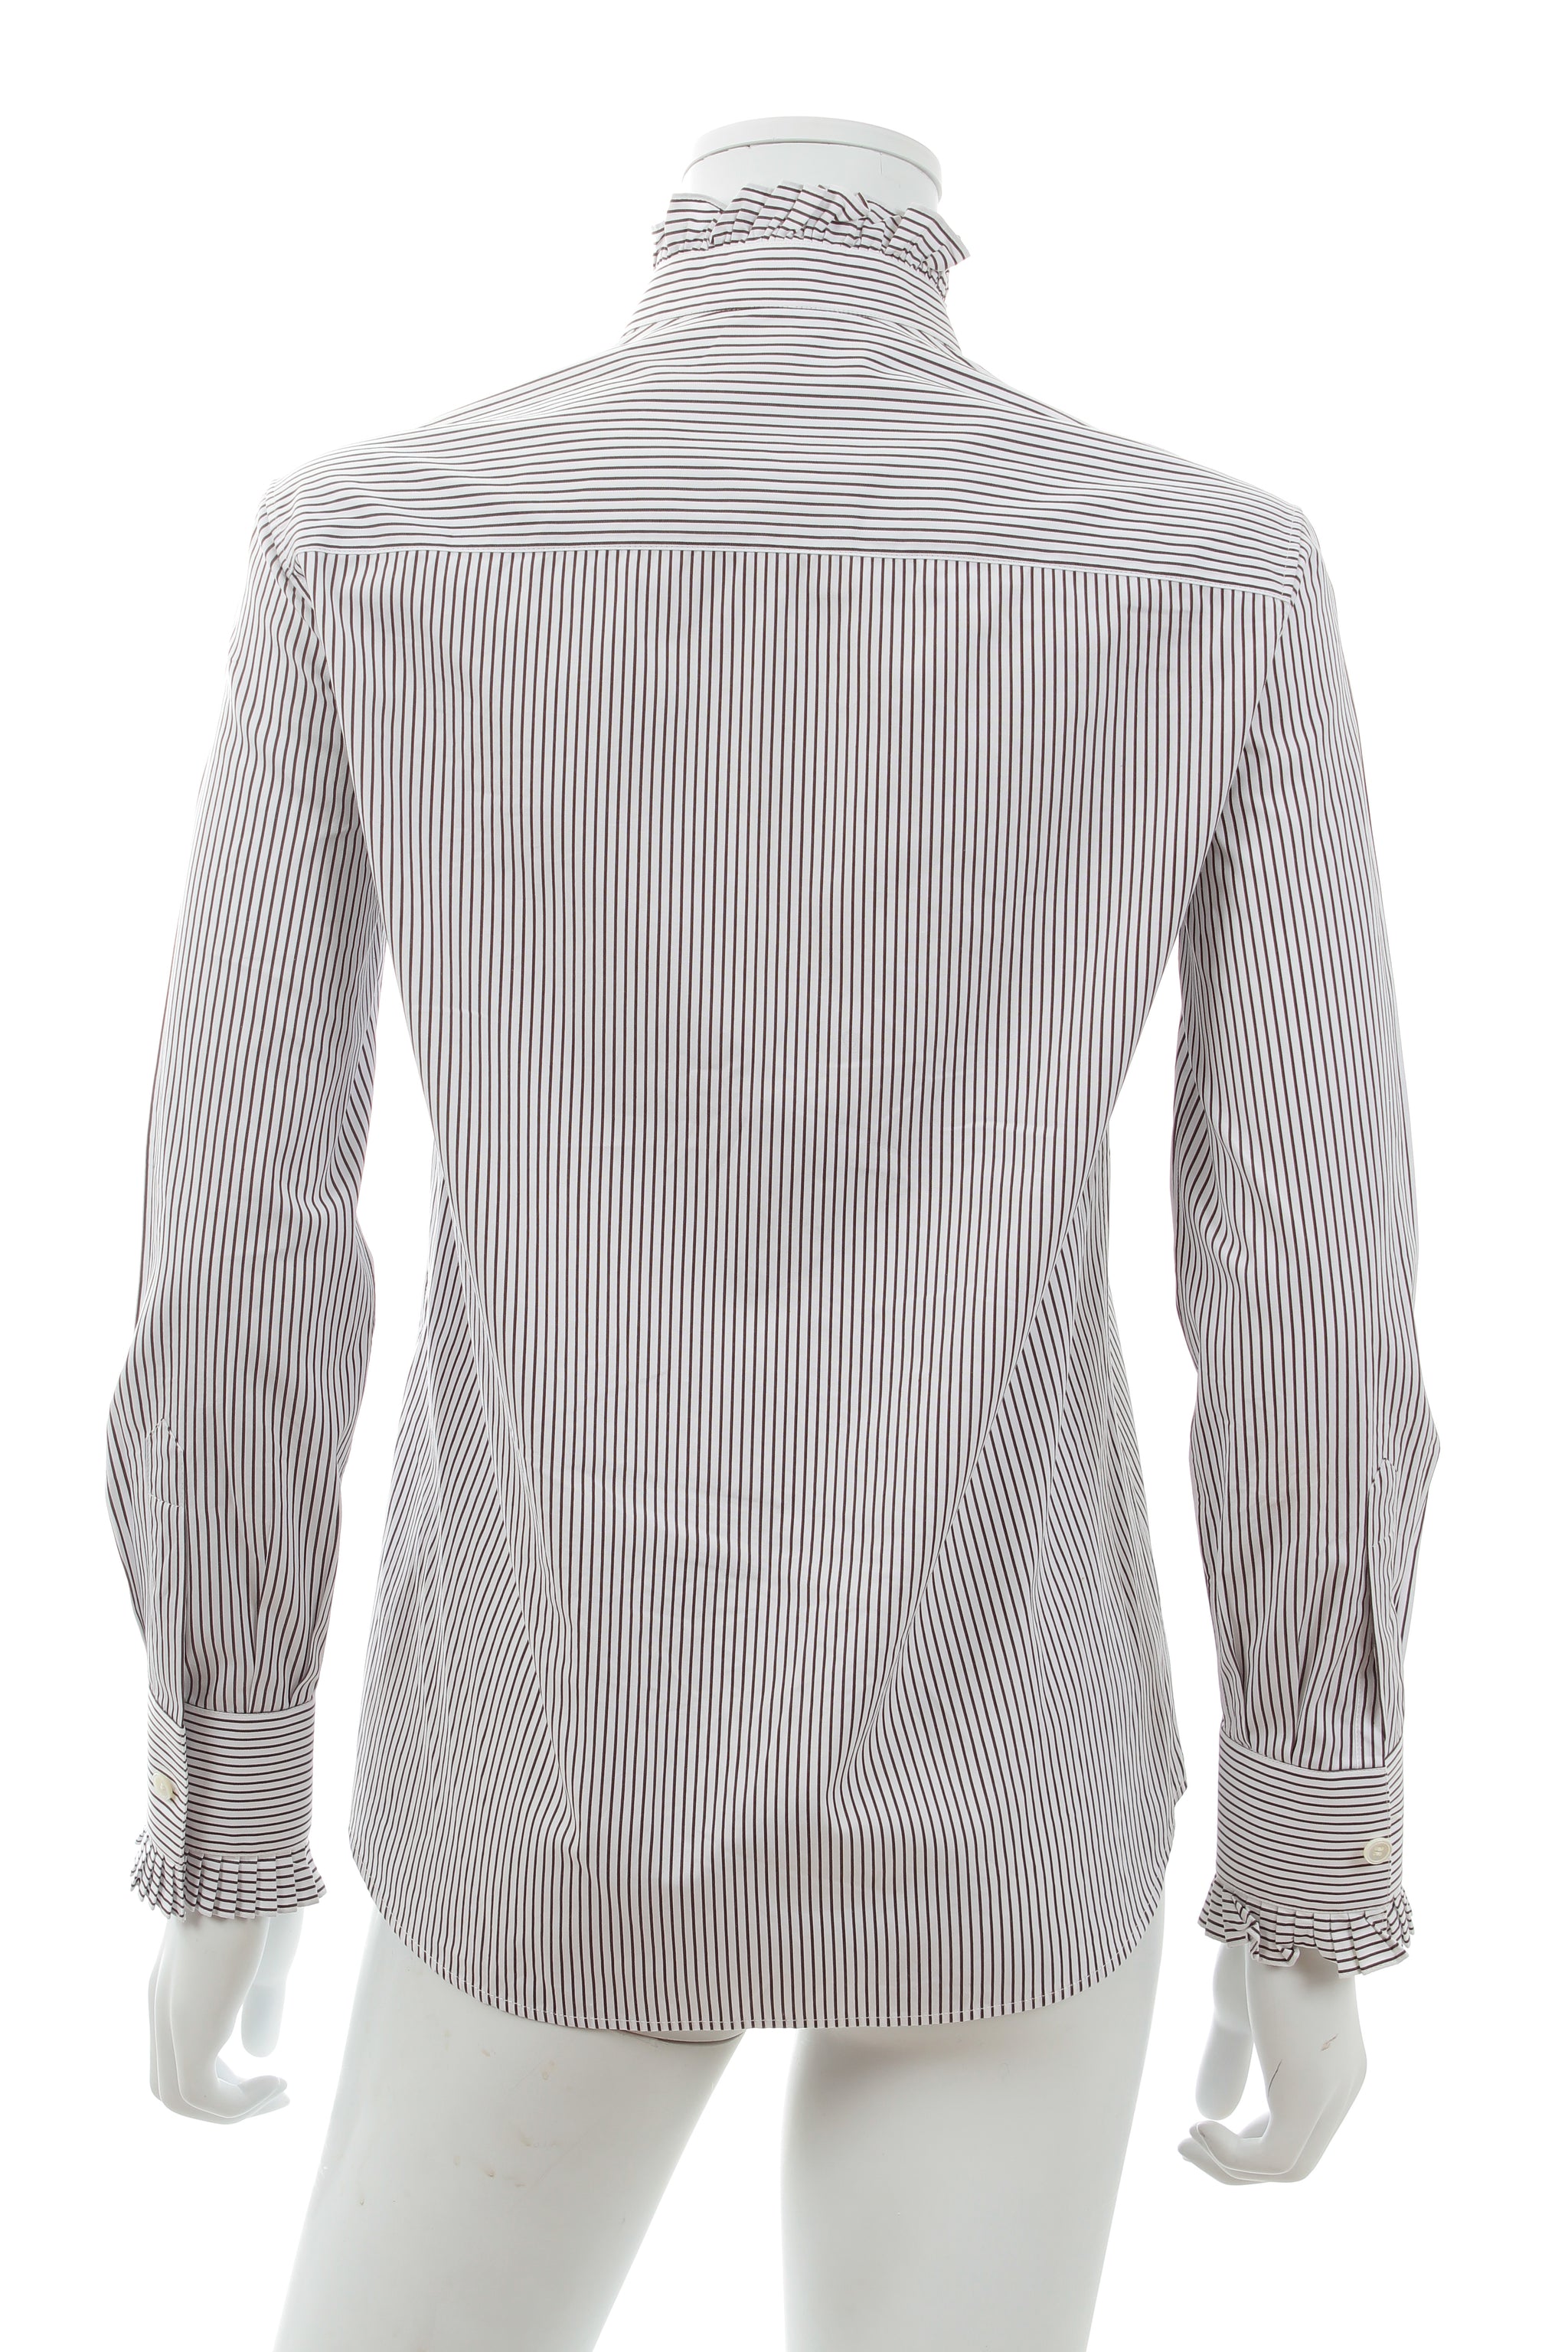 Women's Cropped shirt in striped cotton poplin, CELINE